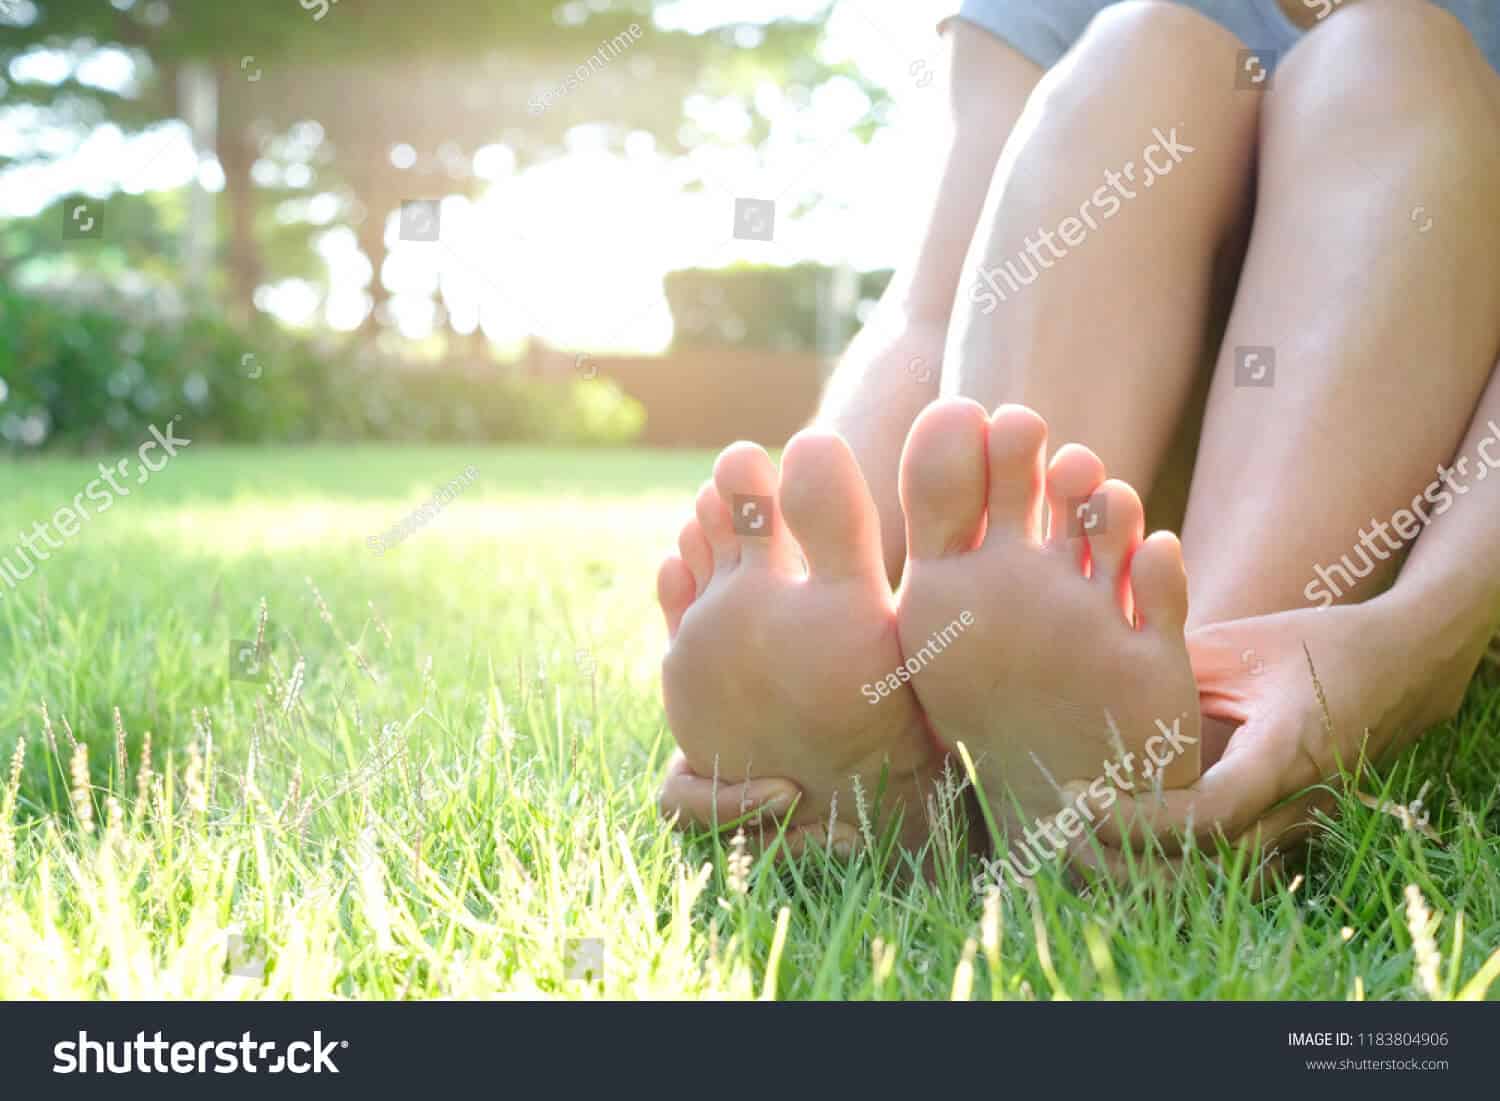 2 triệu hình ảnh đôi bàn chân chất lượng cao trên Shutterstock